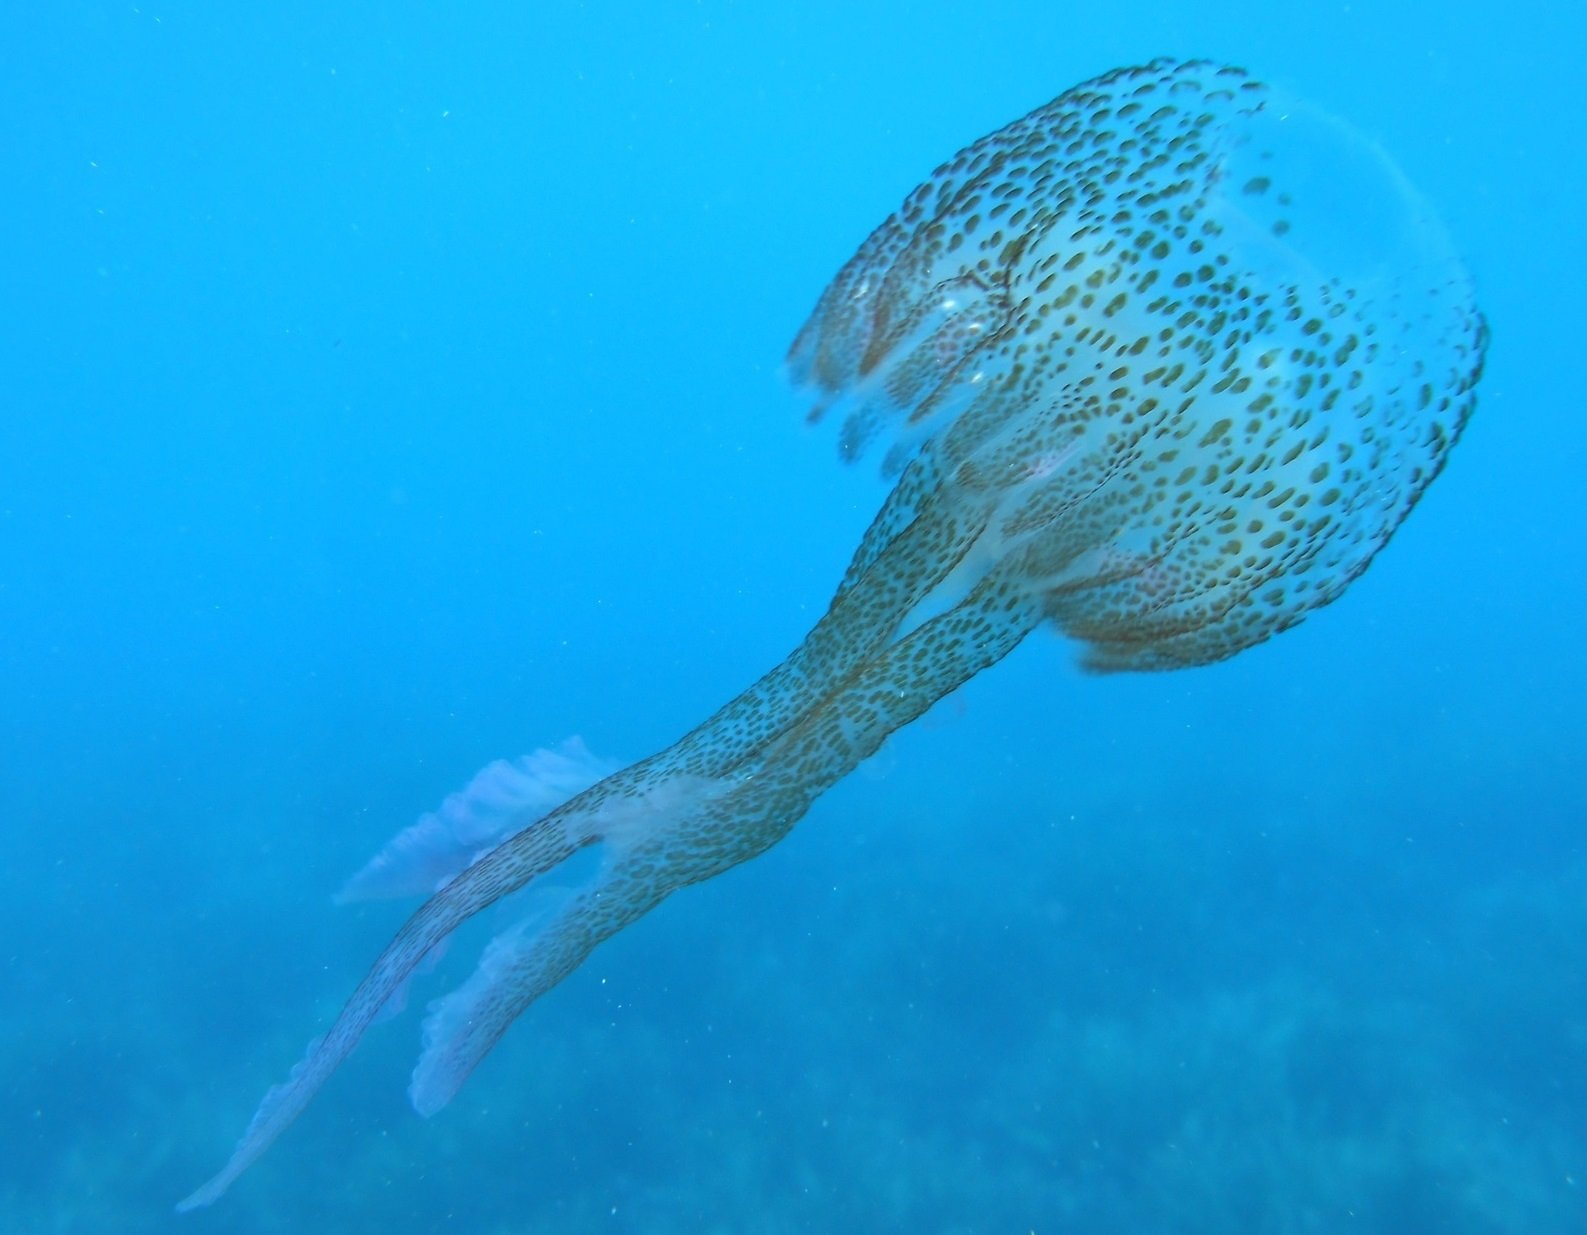 Auge de las medusas en las playas catalanas, ¿por qué?